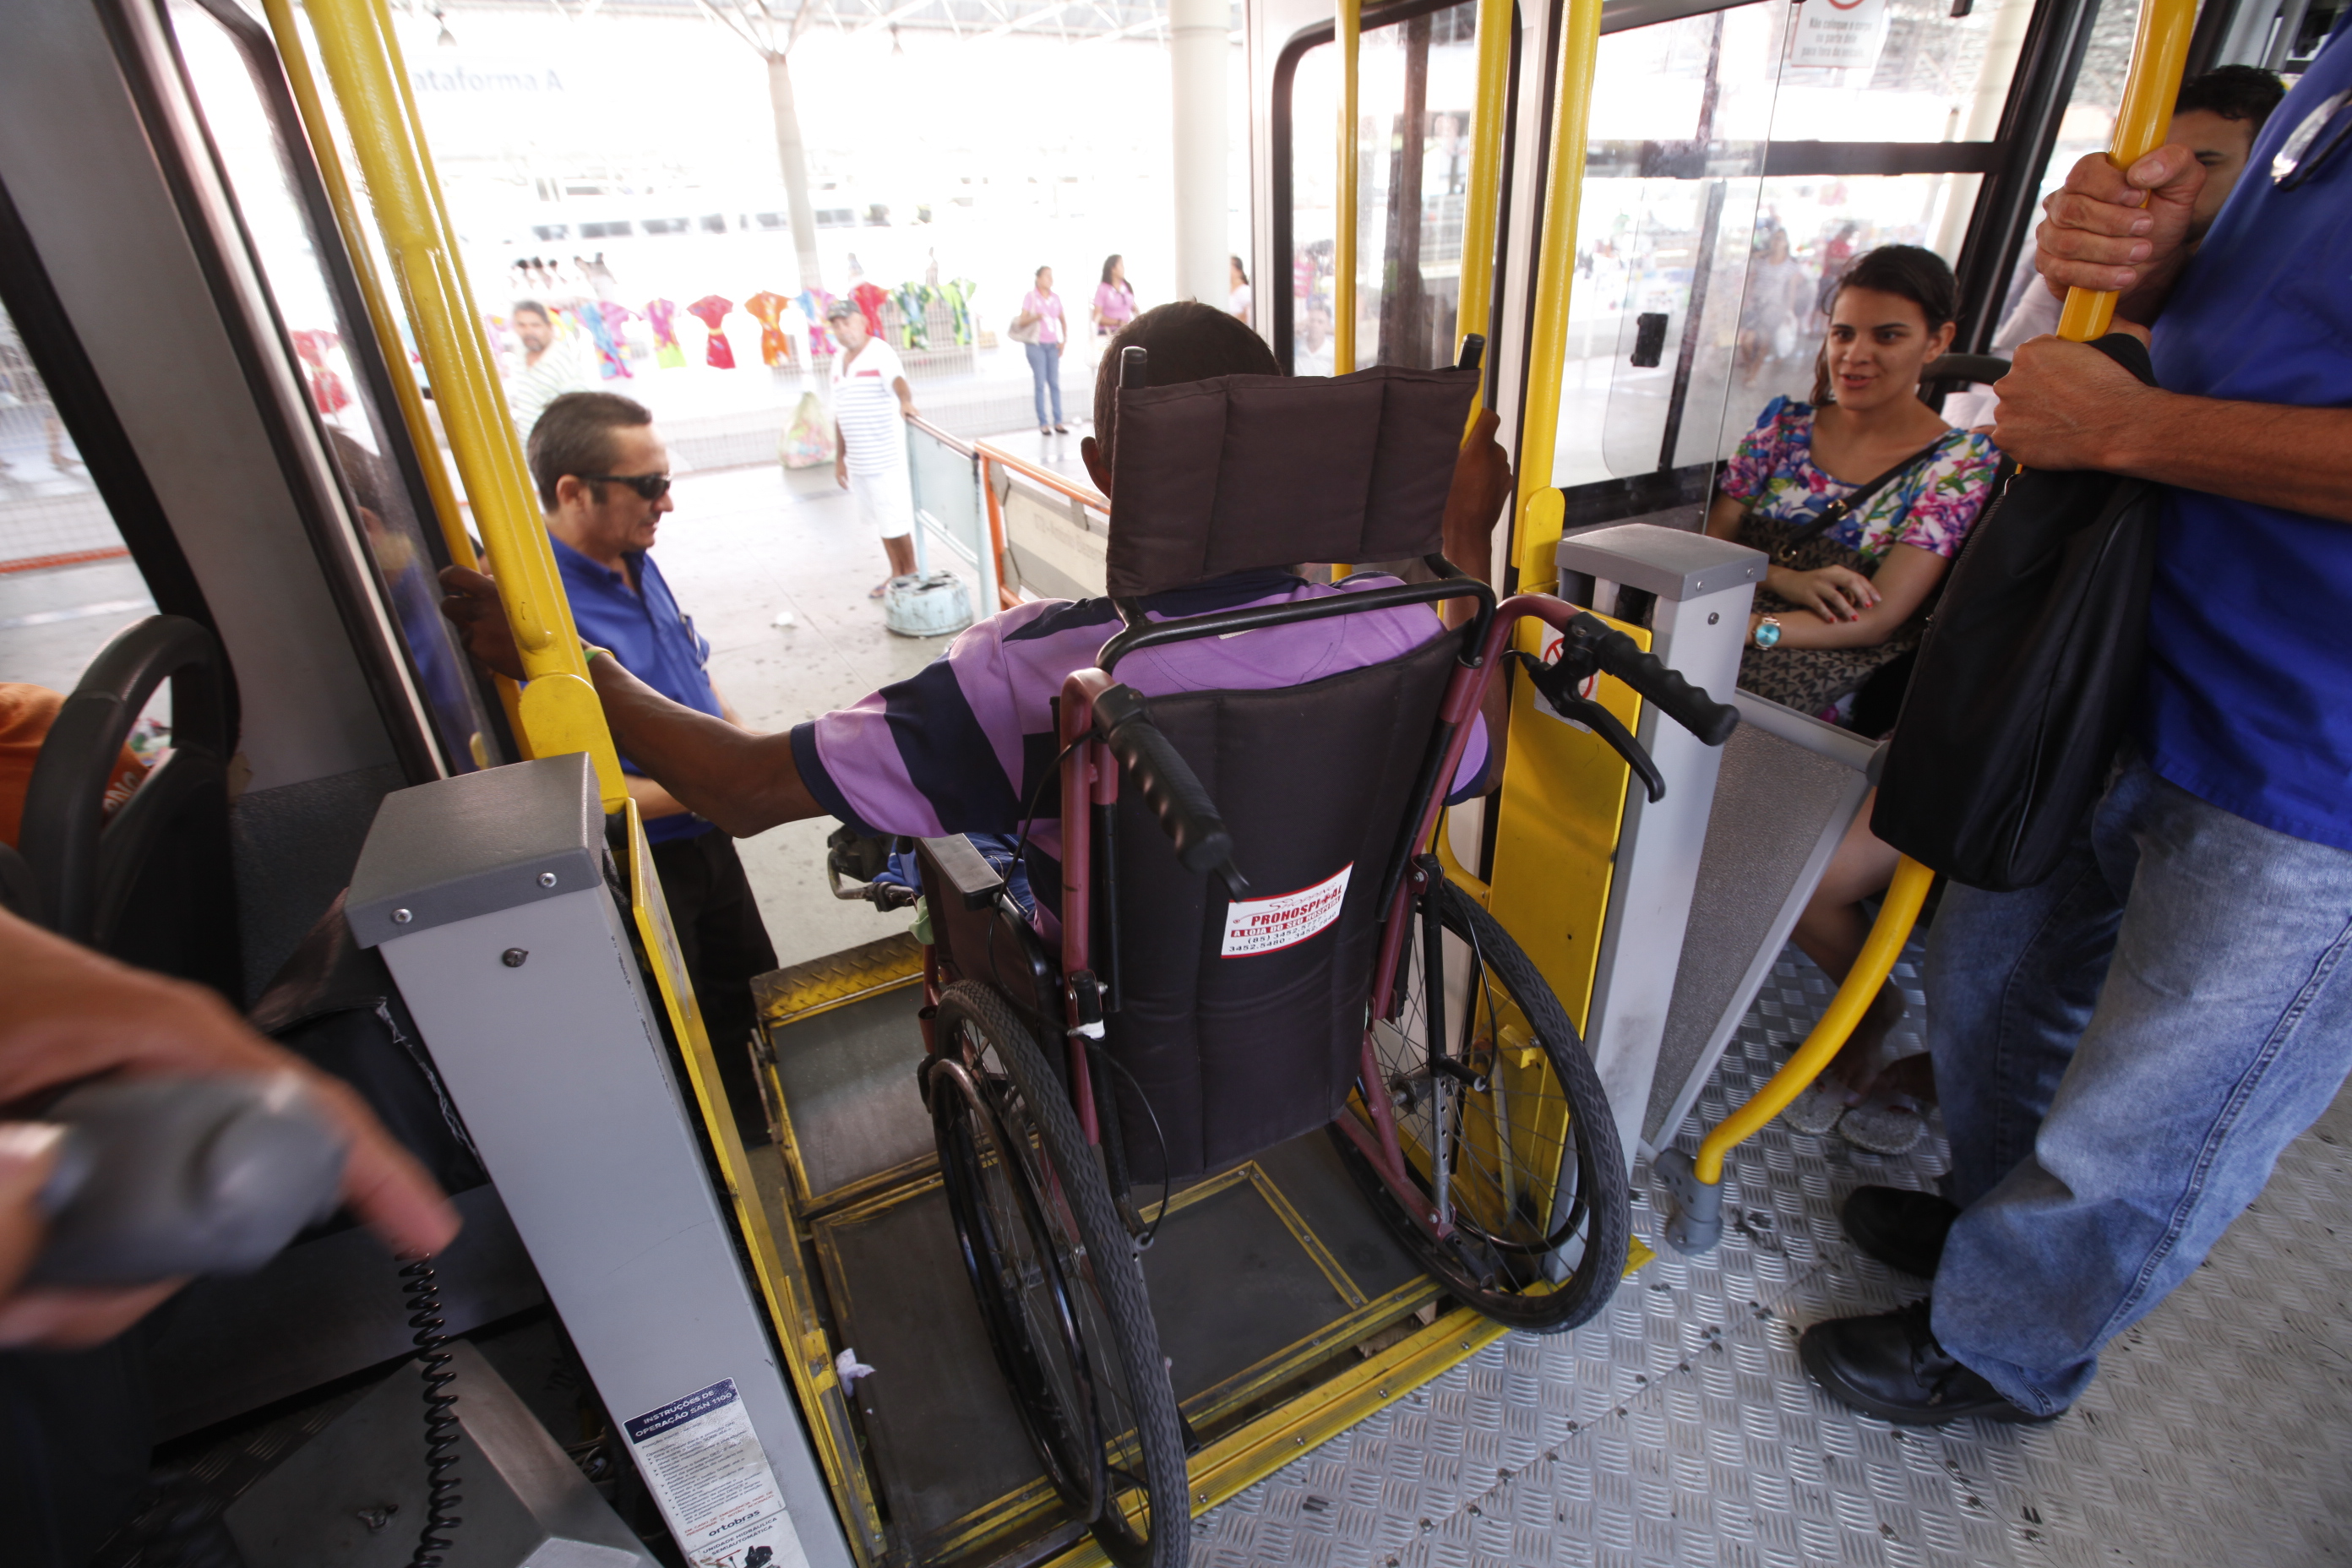 Grupo SC Acessível realizará vistorias no transporte público para avaliar condições de acessibilidade